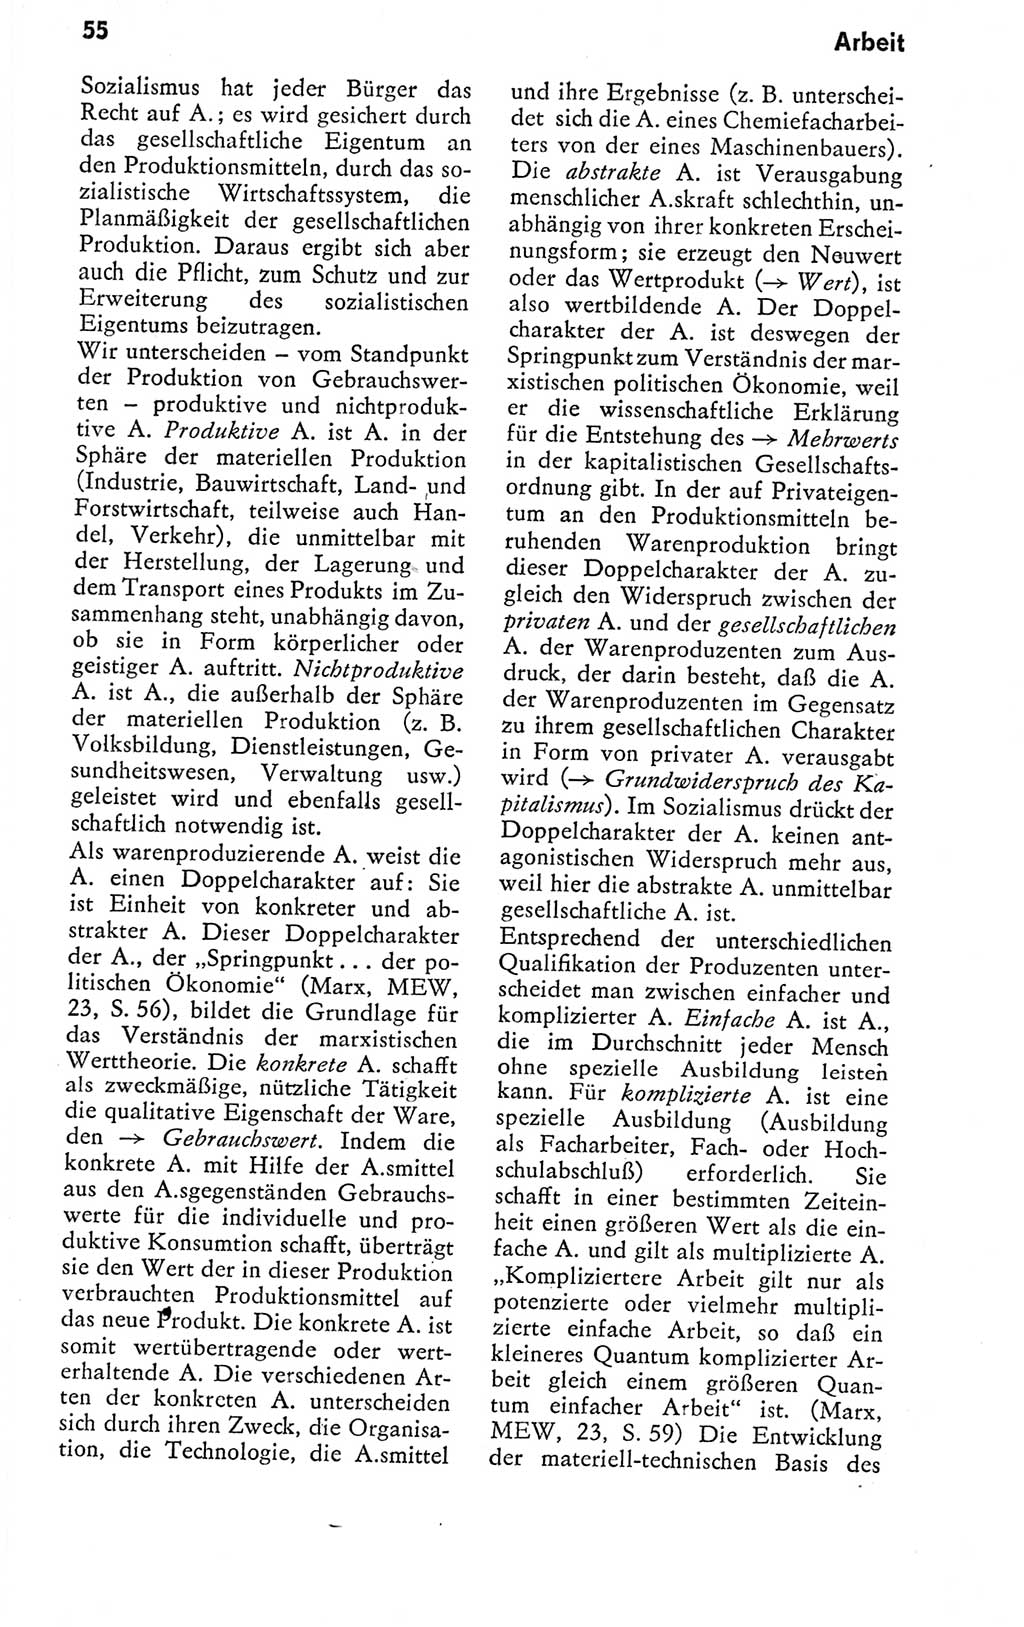 Kleines politisches Wörterbuch [Deutsche Demokratische Republik (DDR)] 1978, Seite 55 (Kl. pol. Wb. DDR 1978, S. 55)